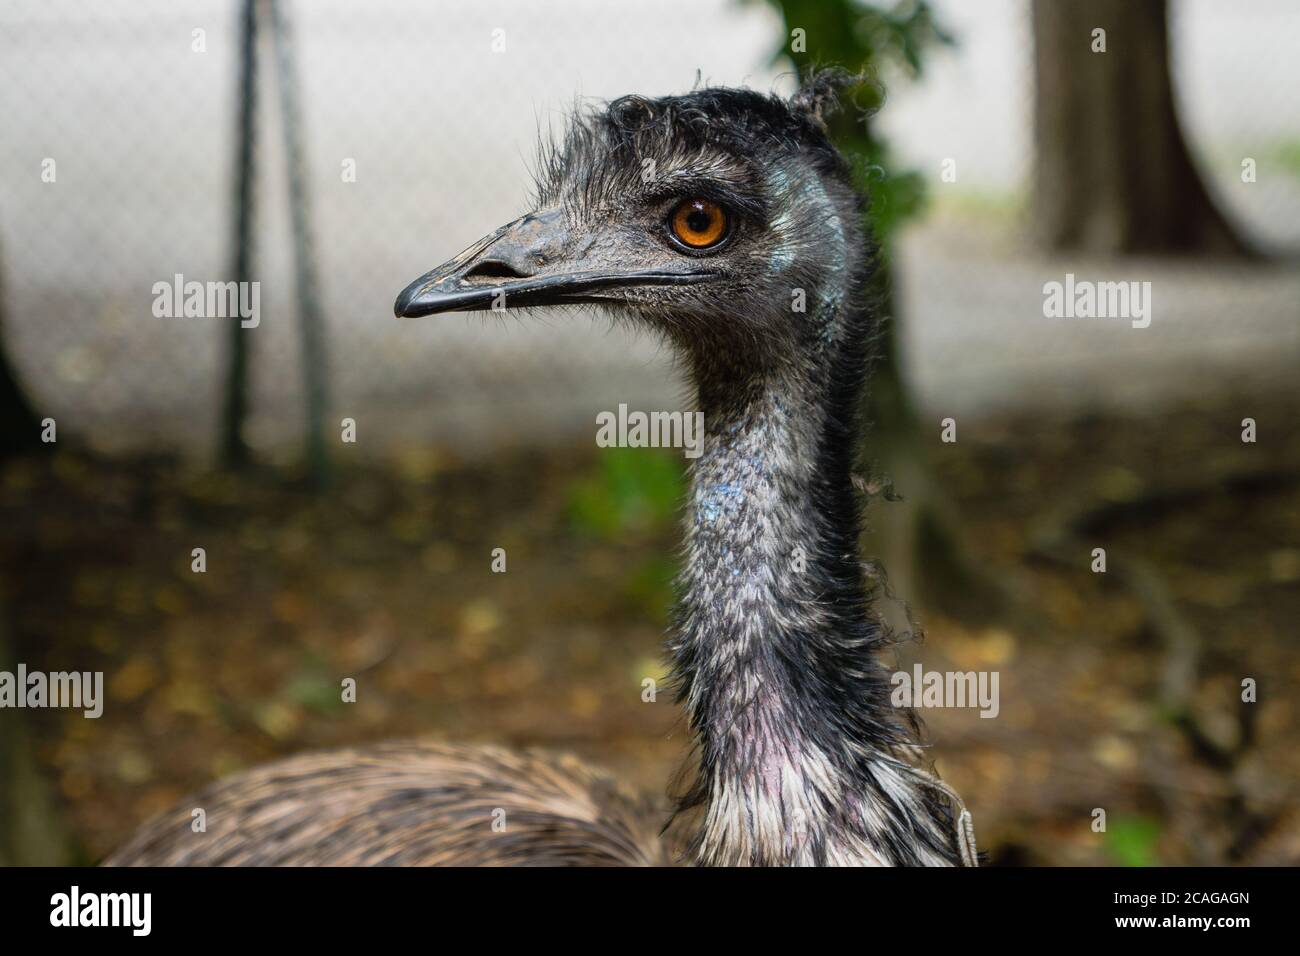 Emu-Vogel, Dromaius novaehollandiae, Nahaufnahme Porträt des australischen Emu-Vogels - Emu ist der zweitgrößte lebende Vogel in seiner Höhe Stockfoto